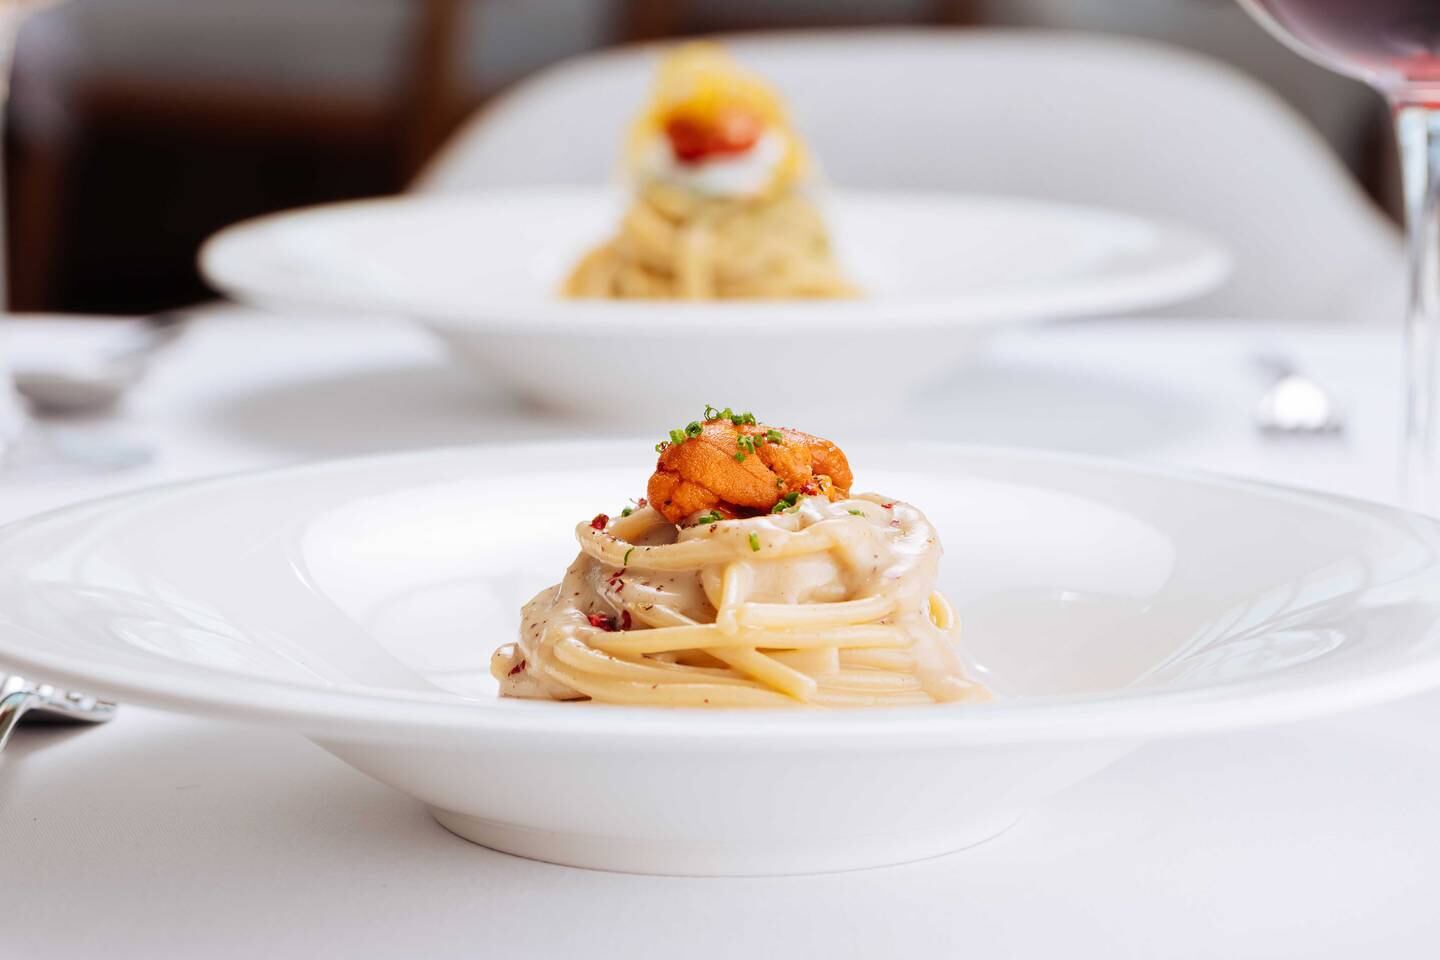 Le plat de spaghettis aux oursins est un favori personnel du chef.  Photo: L'Amo Bistro del Mare